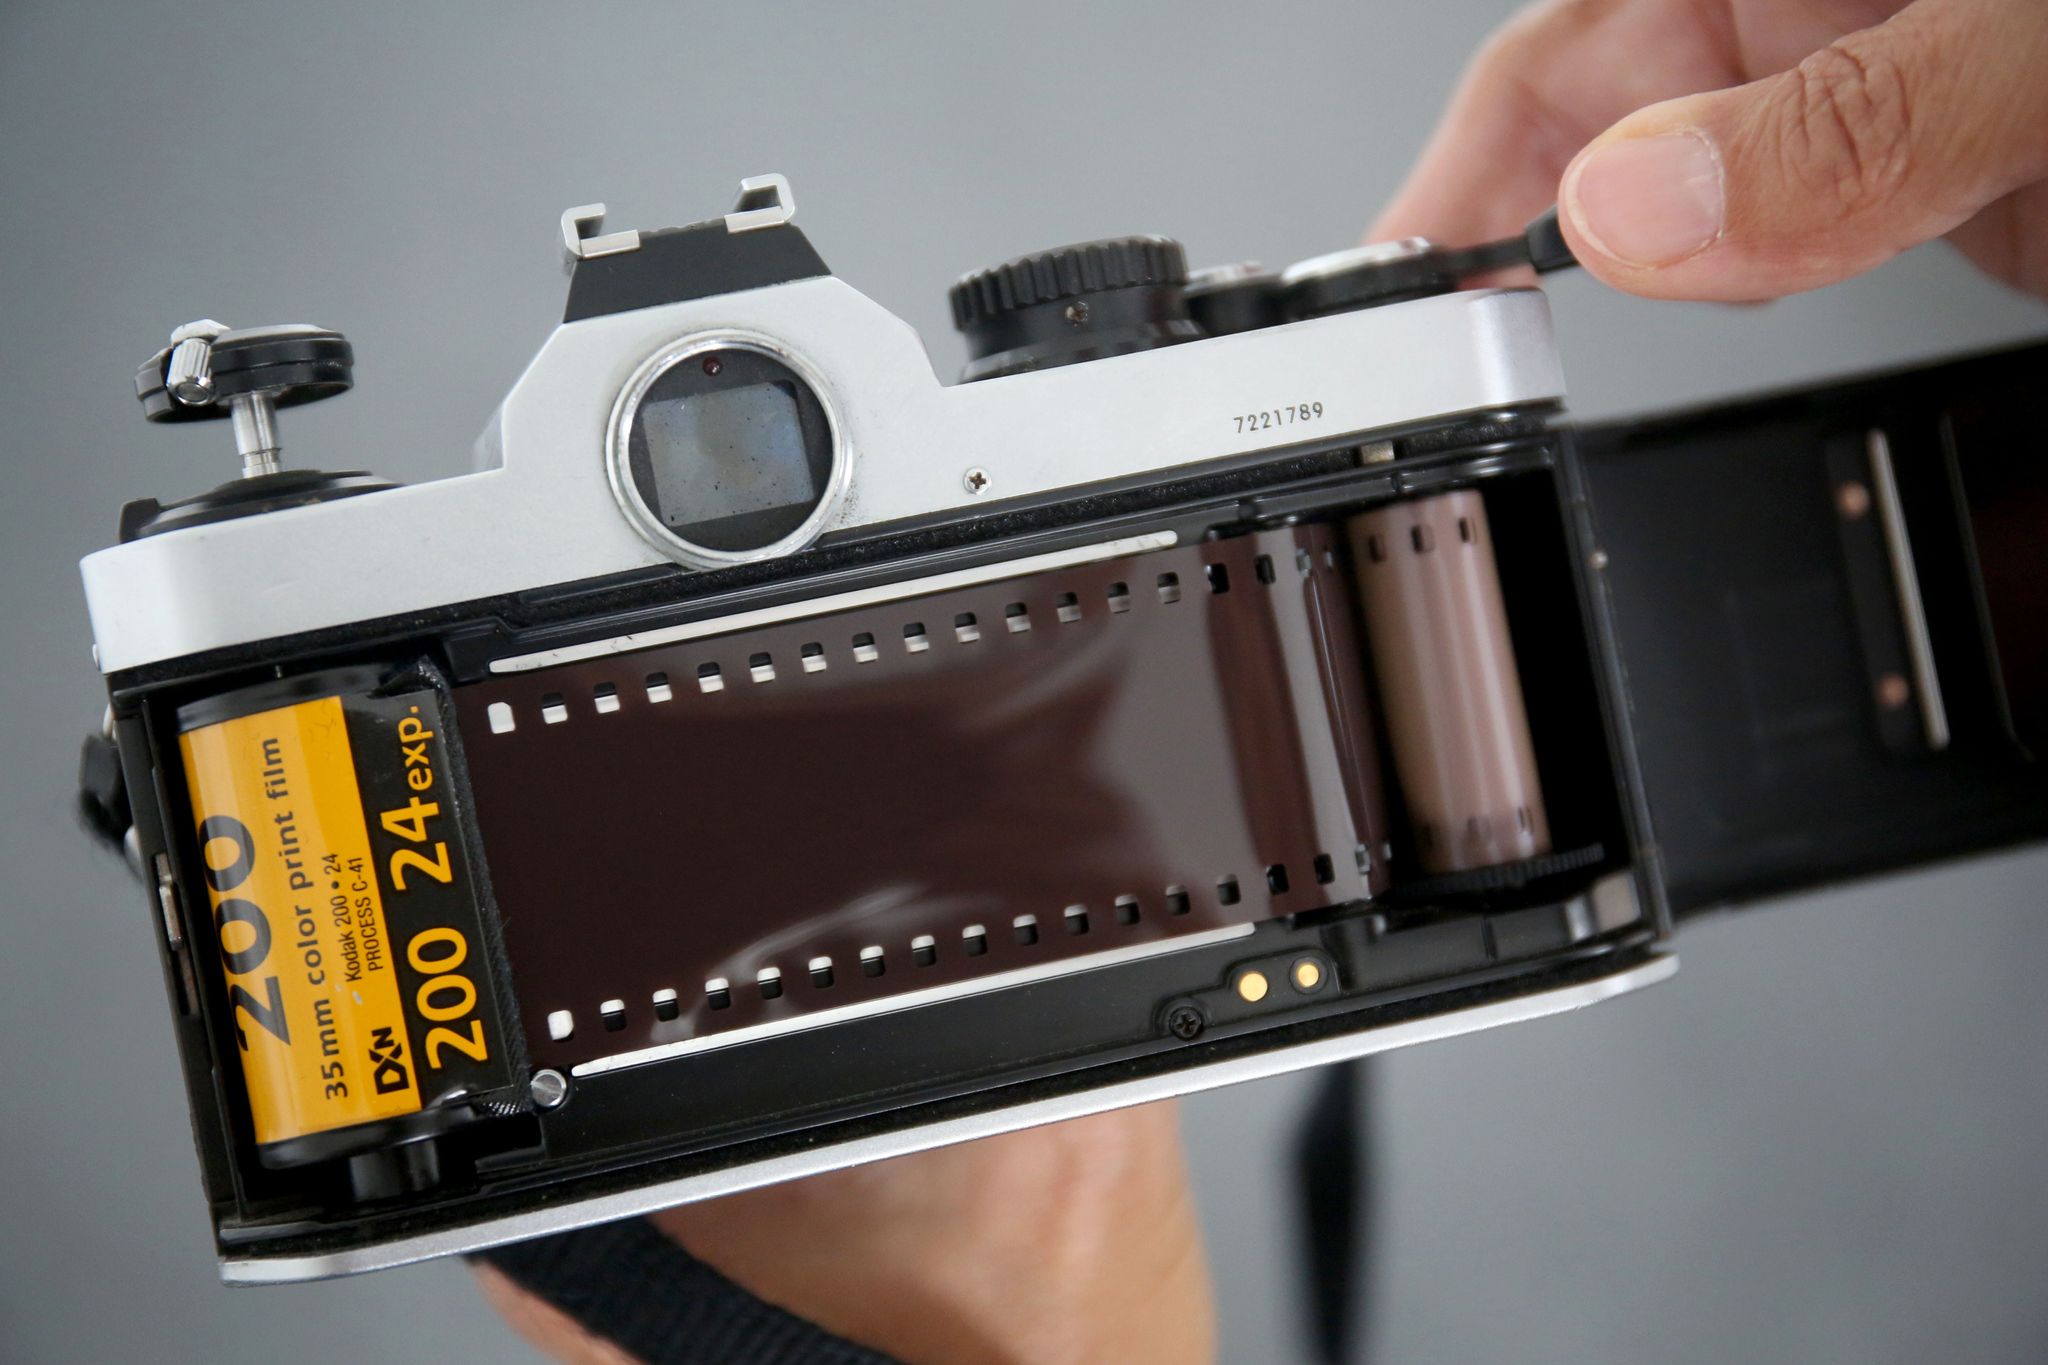 Fotografía analógica #35mm  ¿Cuánto cuesta y cómo funciona? ¿Merece la  pena? 